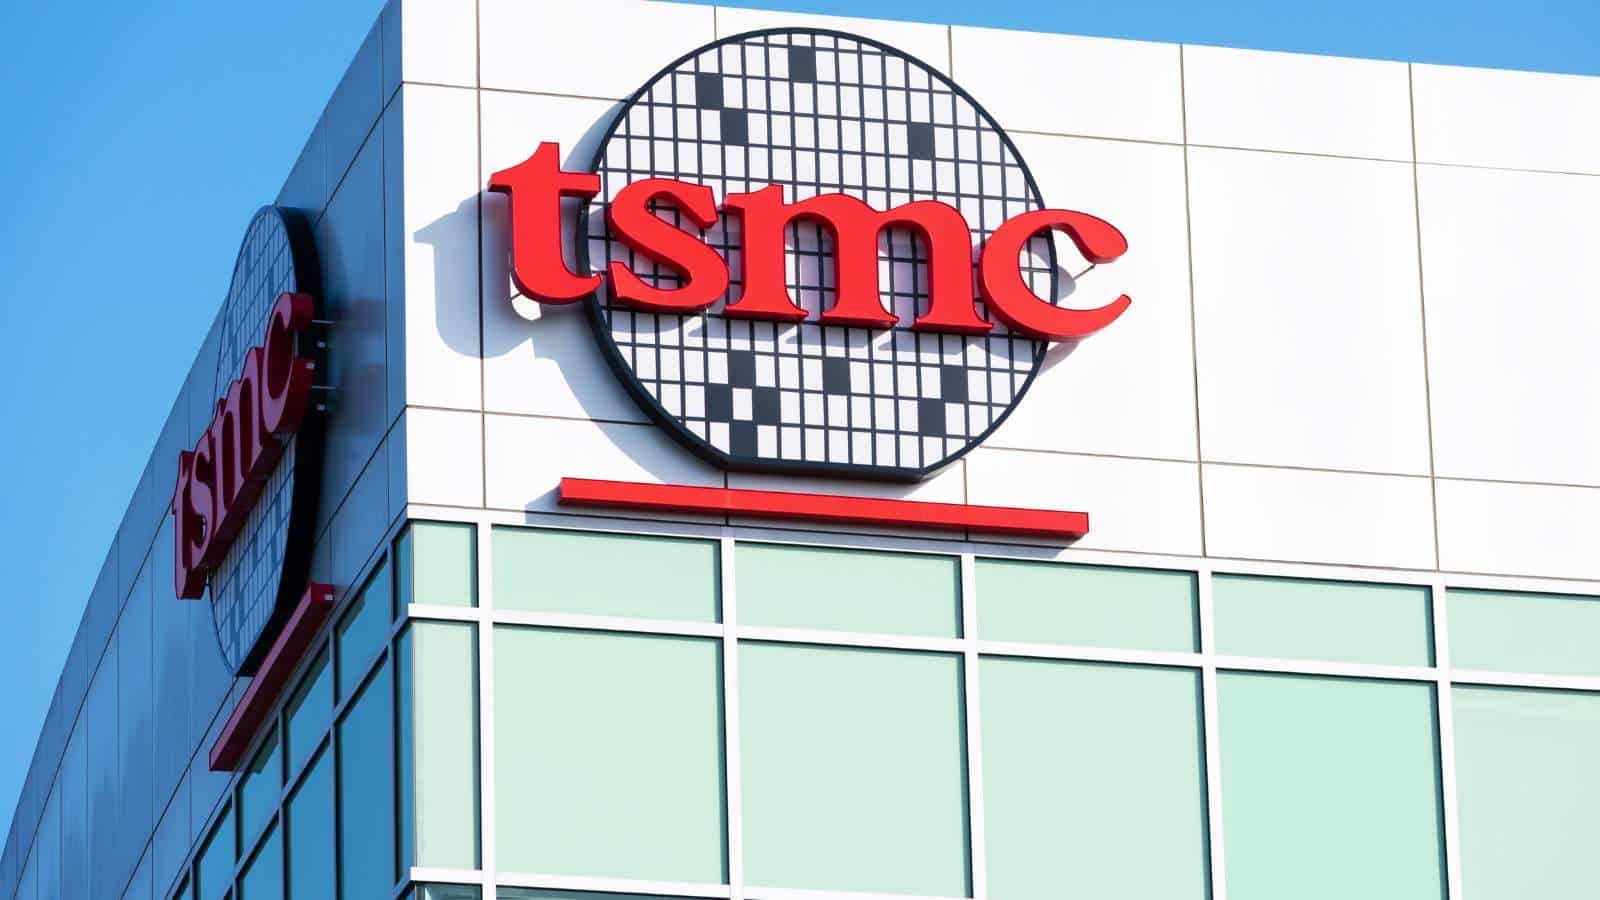 Chiphersteller TSMC: Milliarden-Subventionen sind umstritten